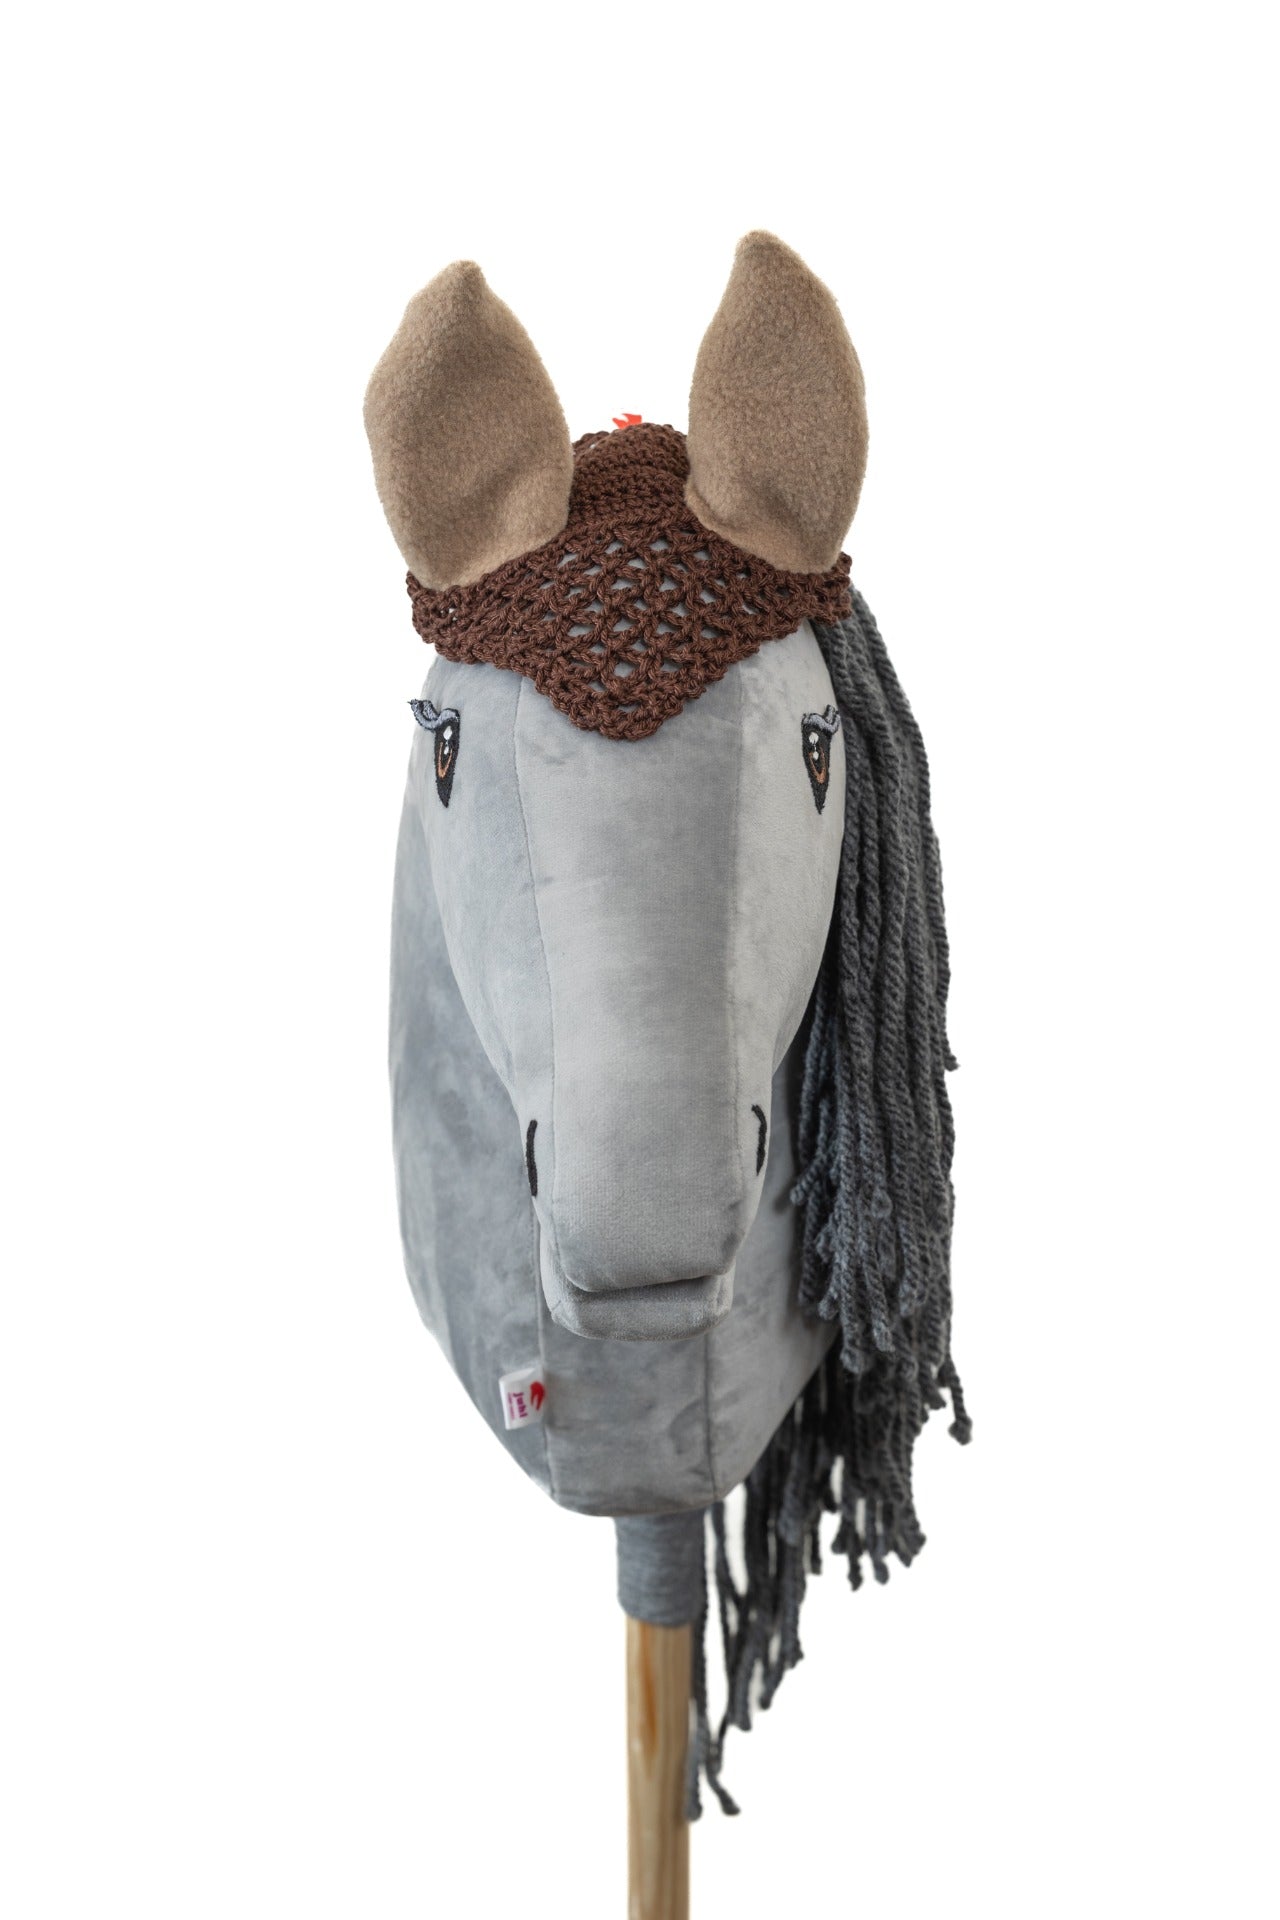 Ear net crocheted - Brown with beige ears - Foal